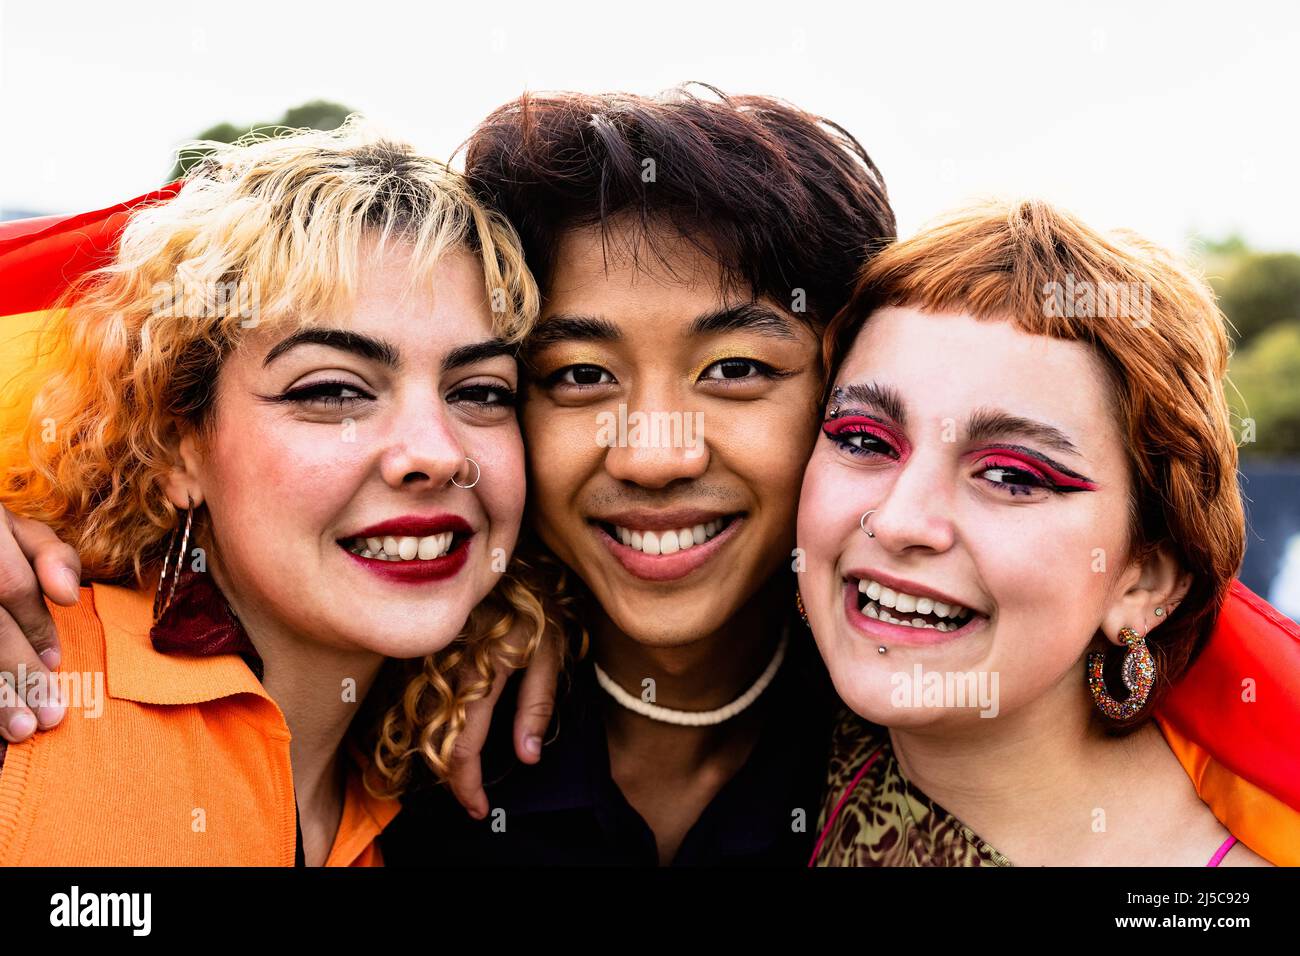 Portrait von glücklichen schwulen Freunden, die zusammen hängen - Lifestyle-Konzept von LGBT und Jugendlichen Stockfoto